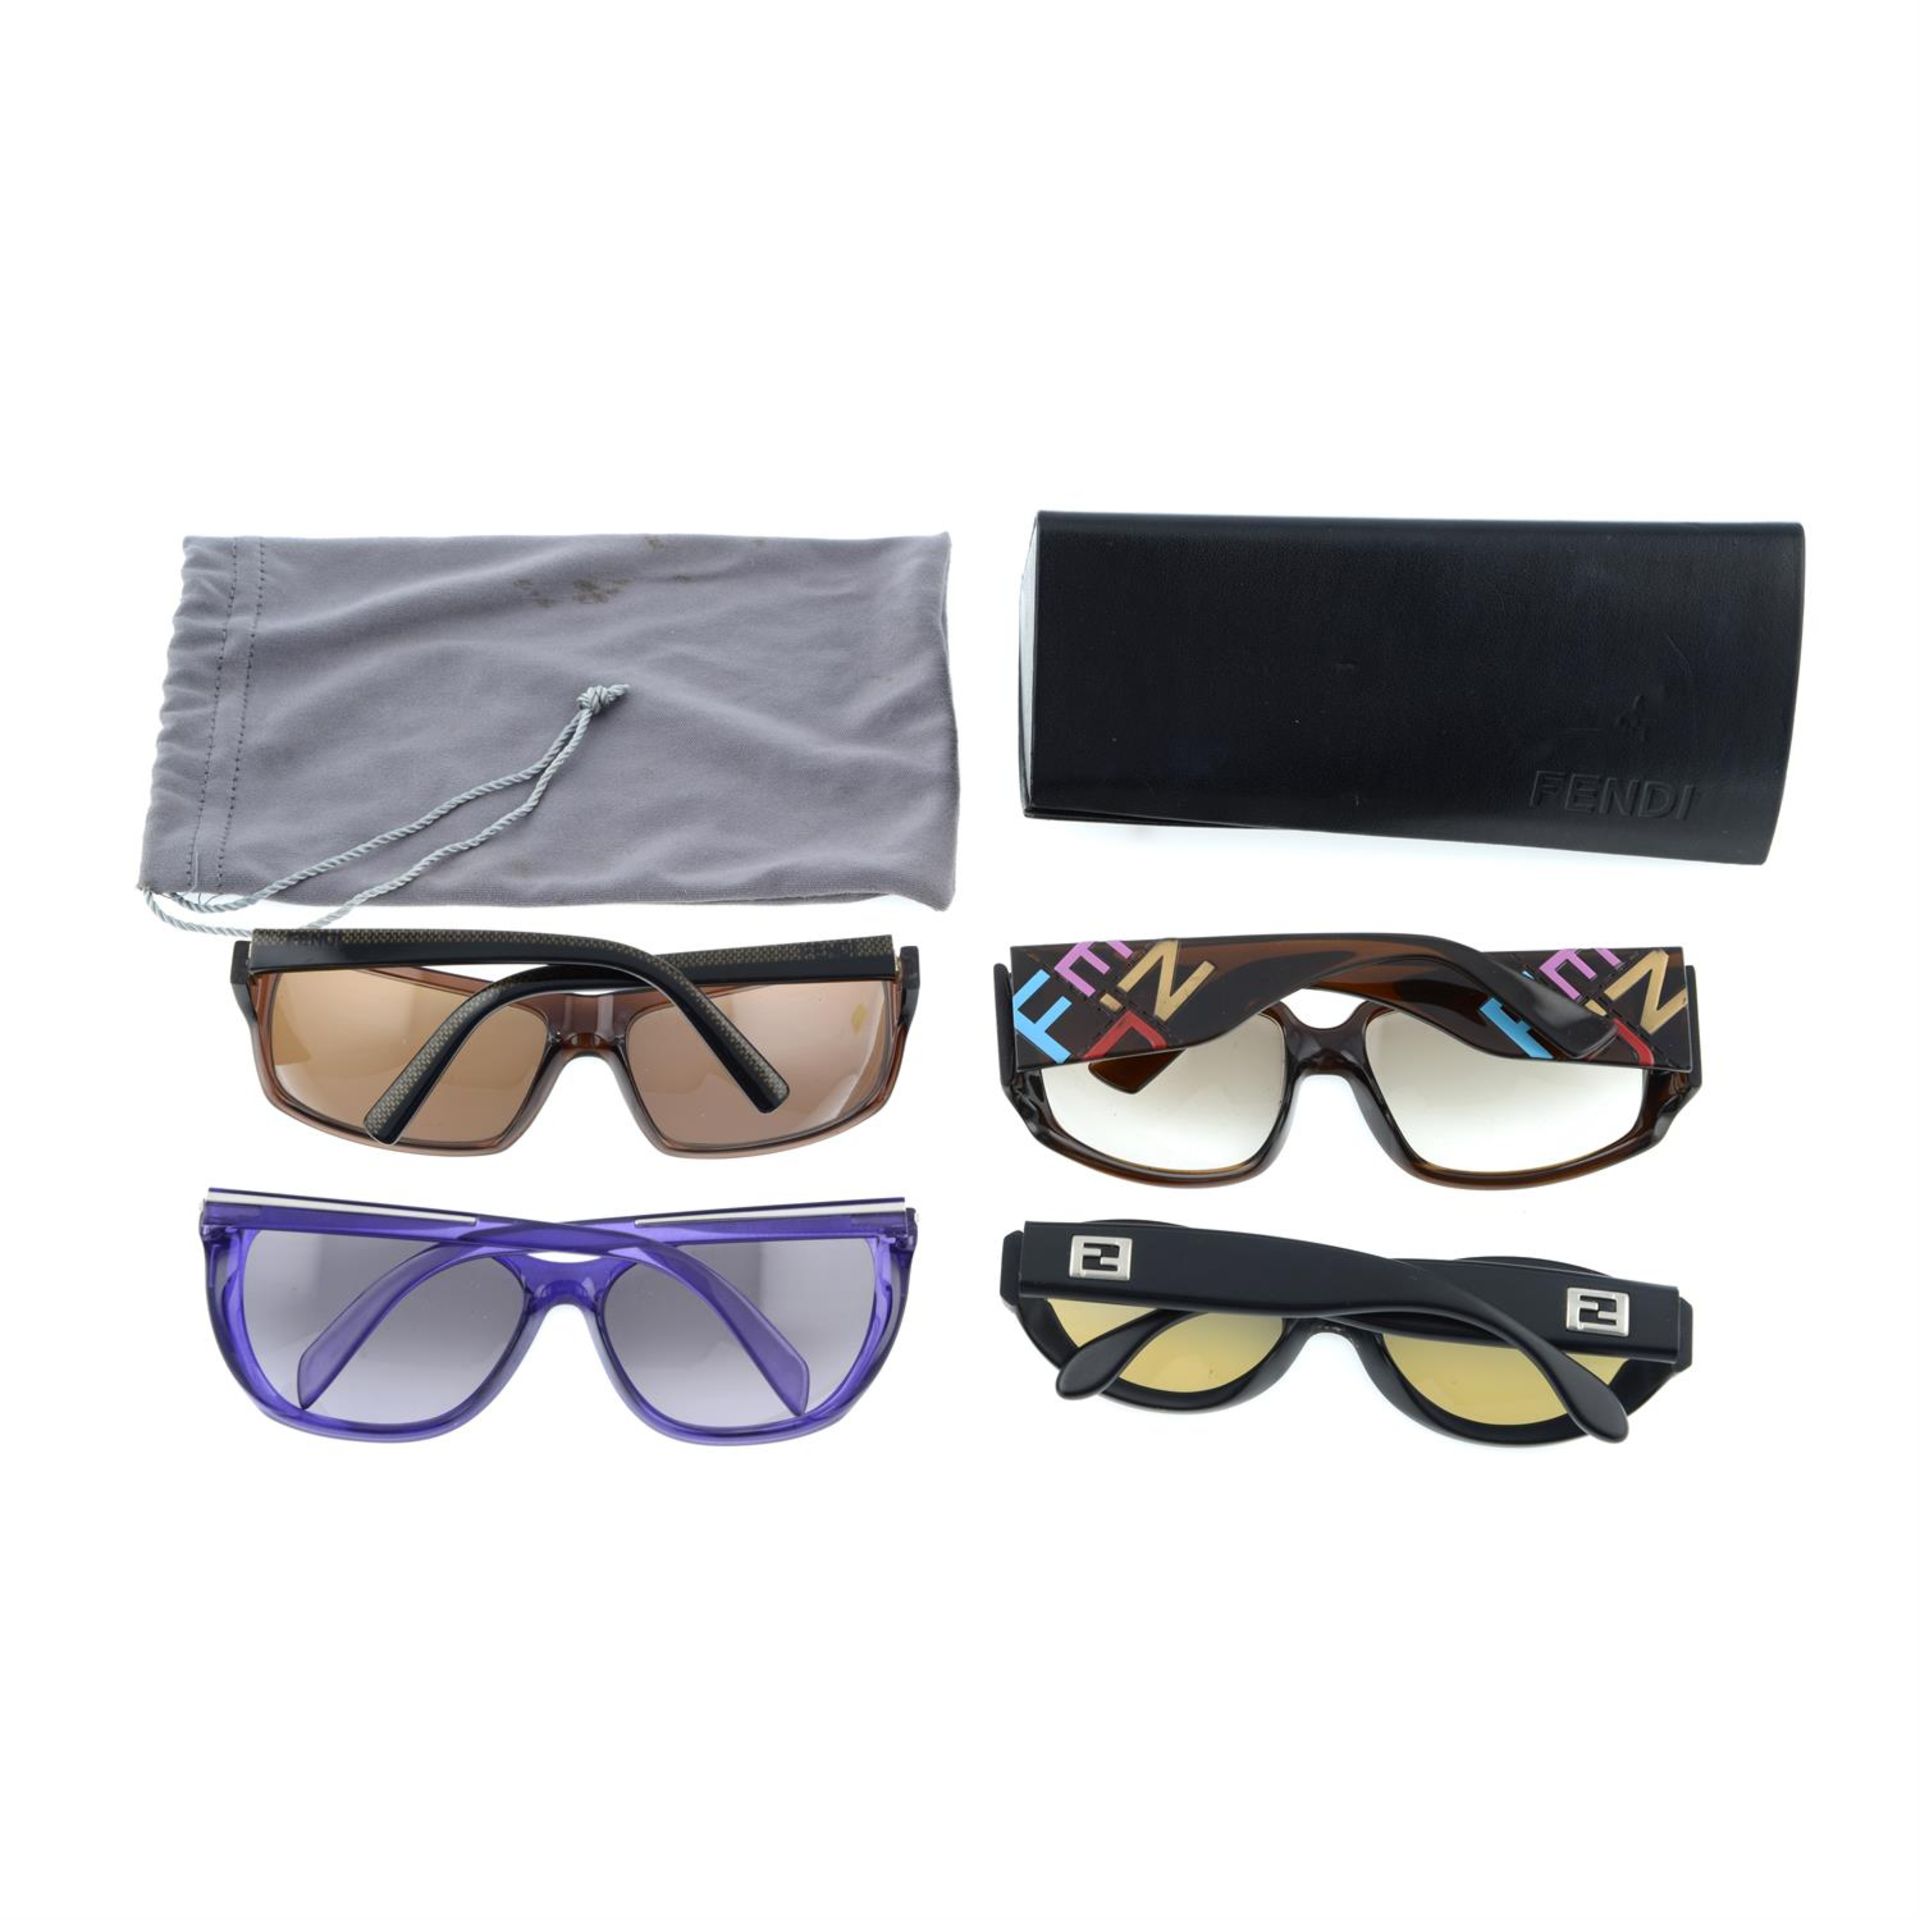 FENDI - four pairs of sunglasses. - Image 2 of 2